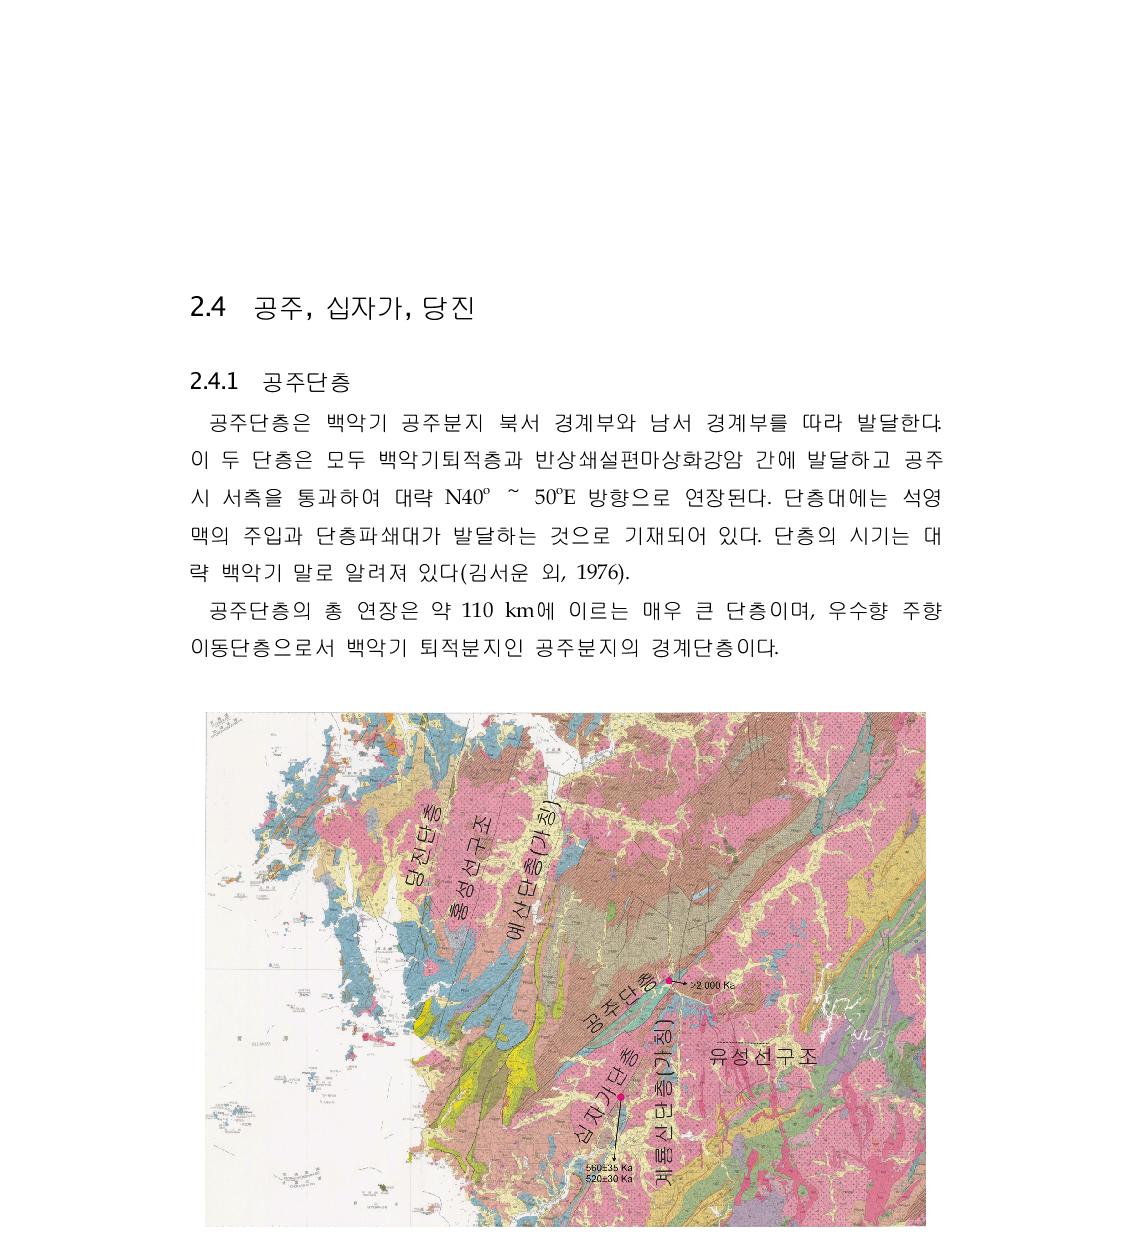 대전, 충청남도 공주 인근지역에서 확인되는 대규모단층과 선구조